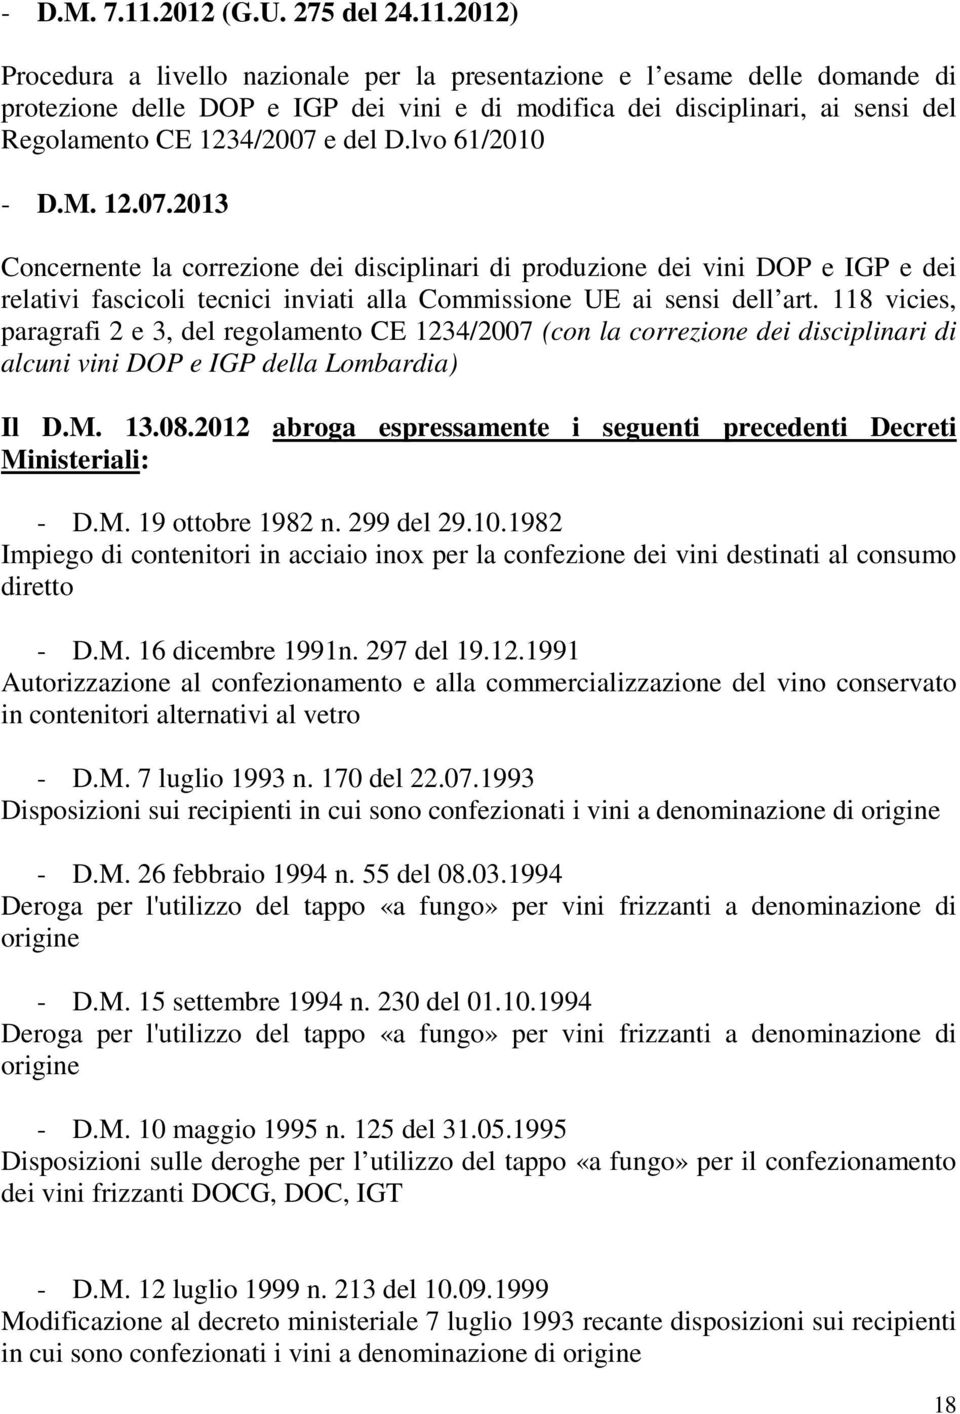 2012) Procedura a livello nazionale per la presentazione e l esame delle domande di protezione delle DOP e IGP dei vini e di modifica dei disciplinari, ai sensi del Regolamento CE 1234/2007 e del D.